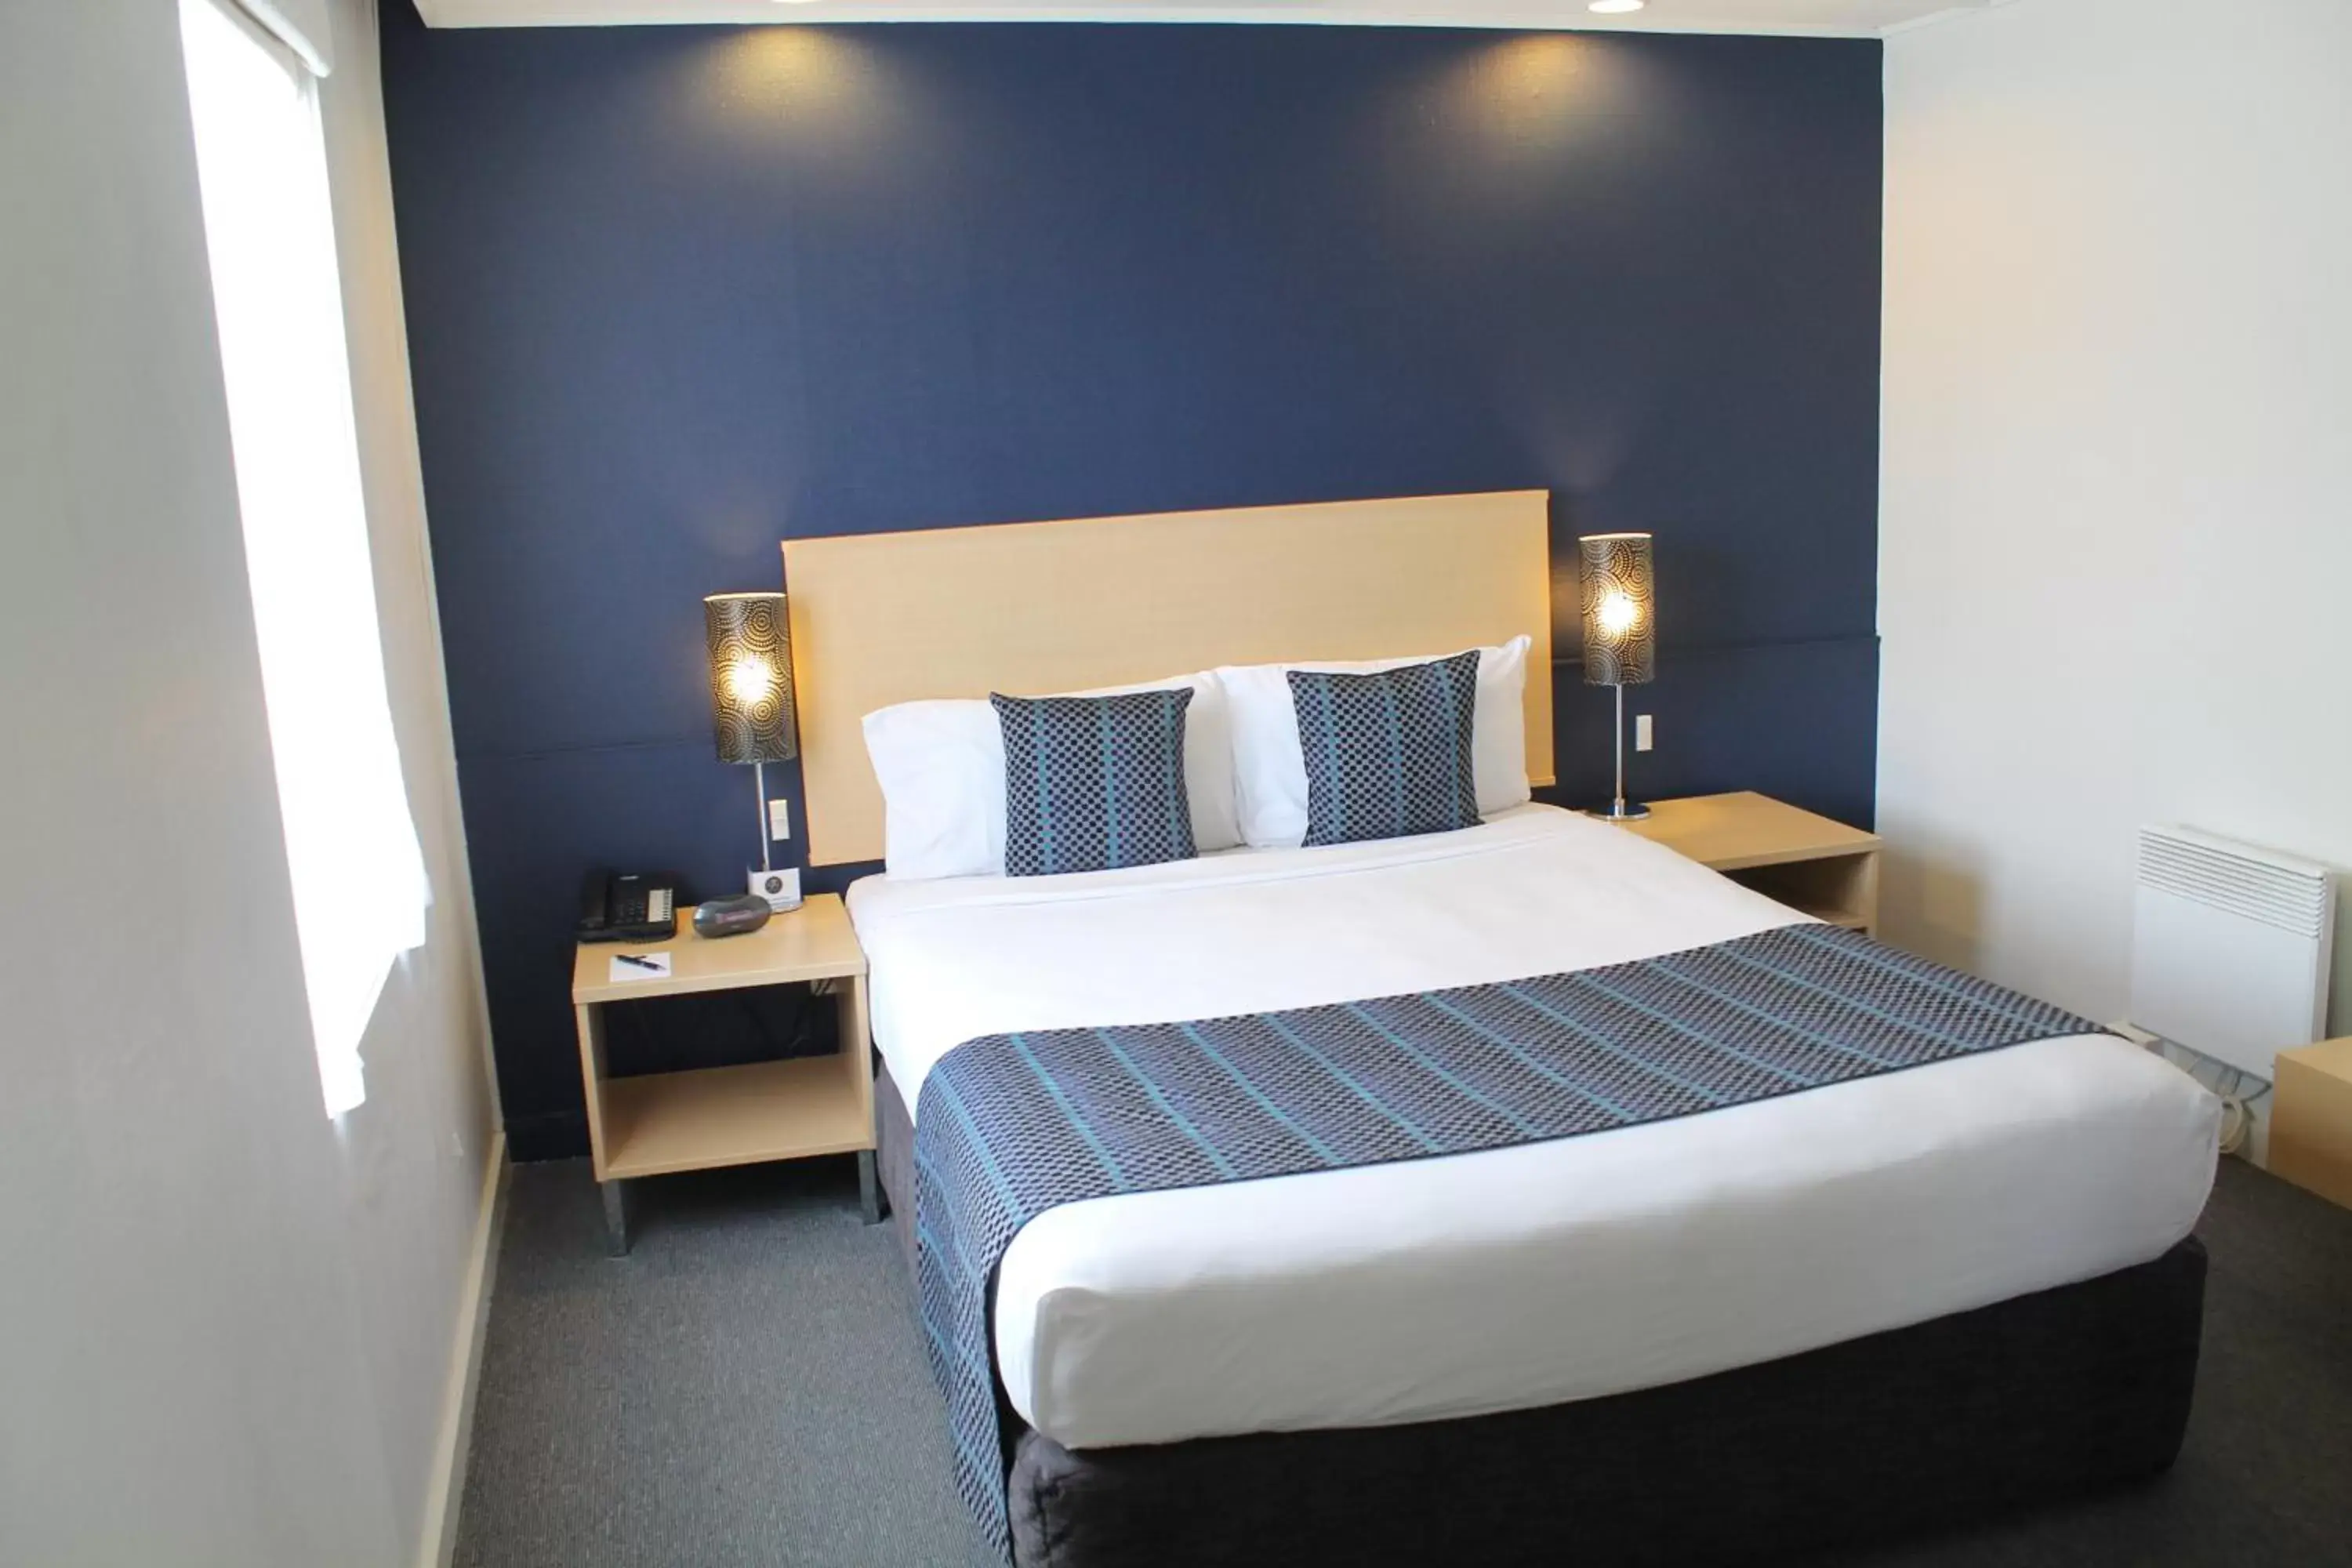 Bedroom, Room Photo in Willis Wellington Hotel